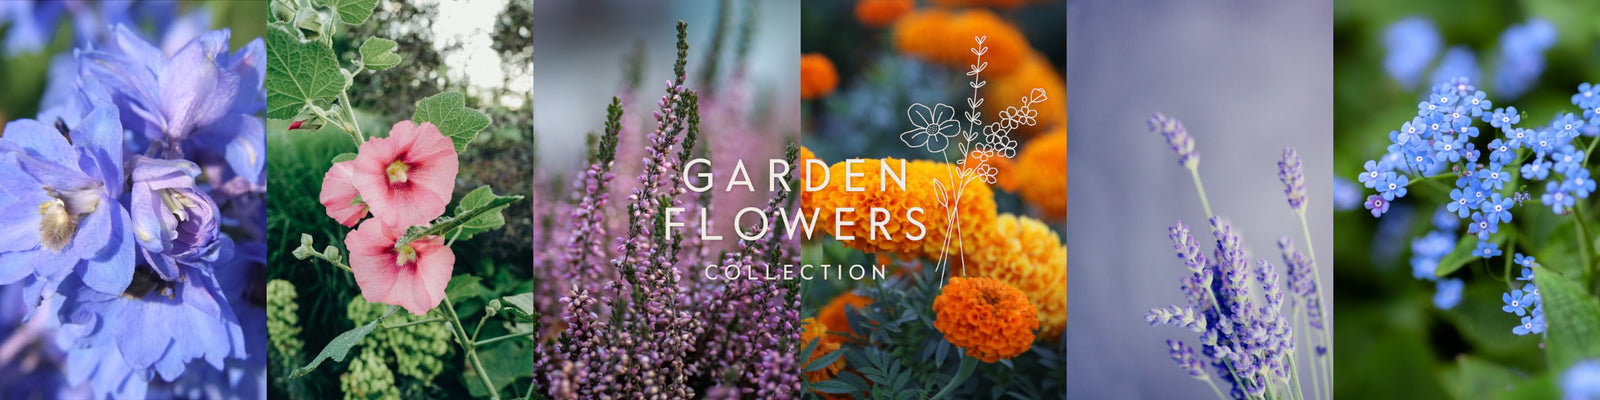 Garden Flowers Delphinium Hollyhock Heather Marigold Lavender Forget-me-not 